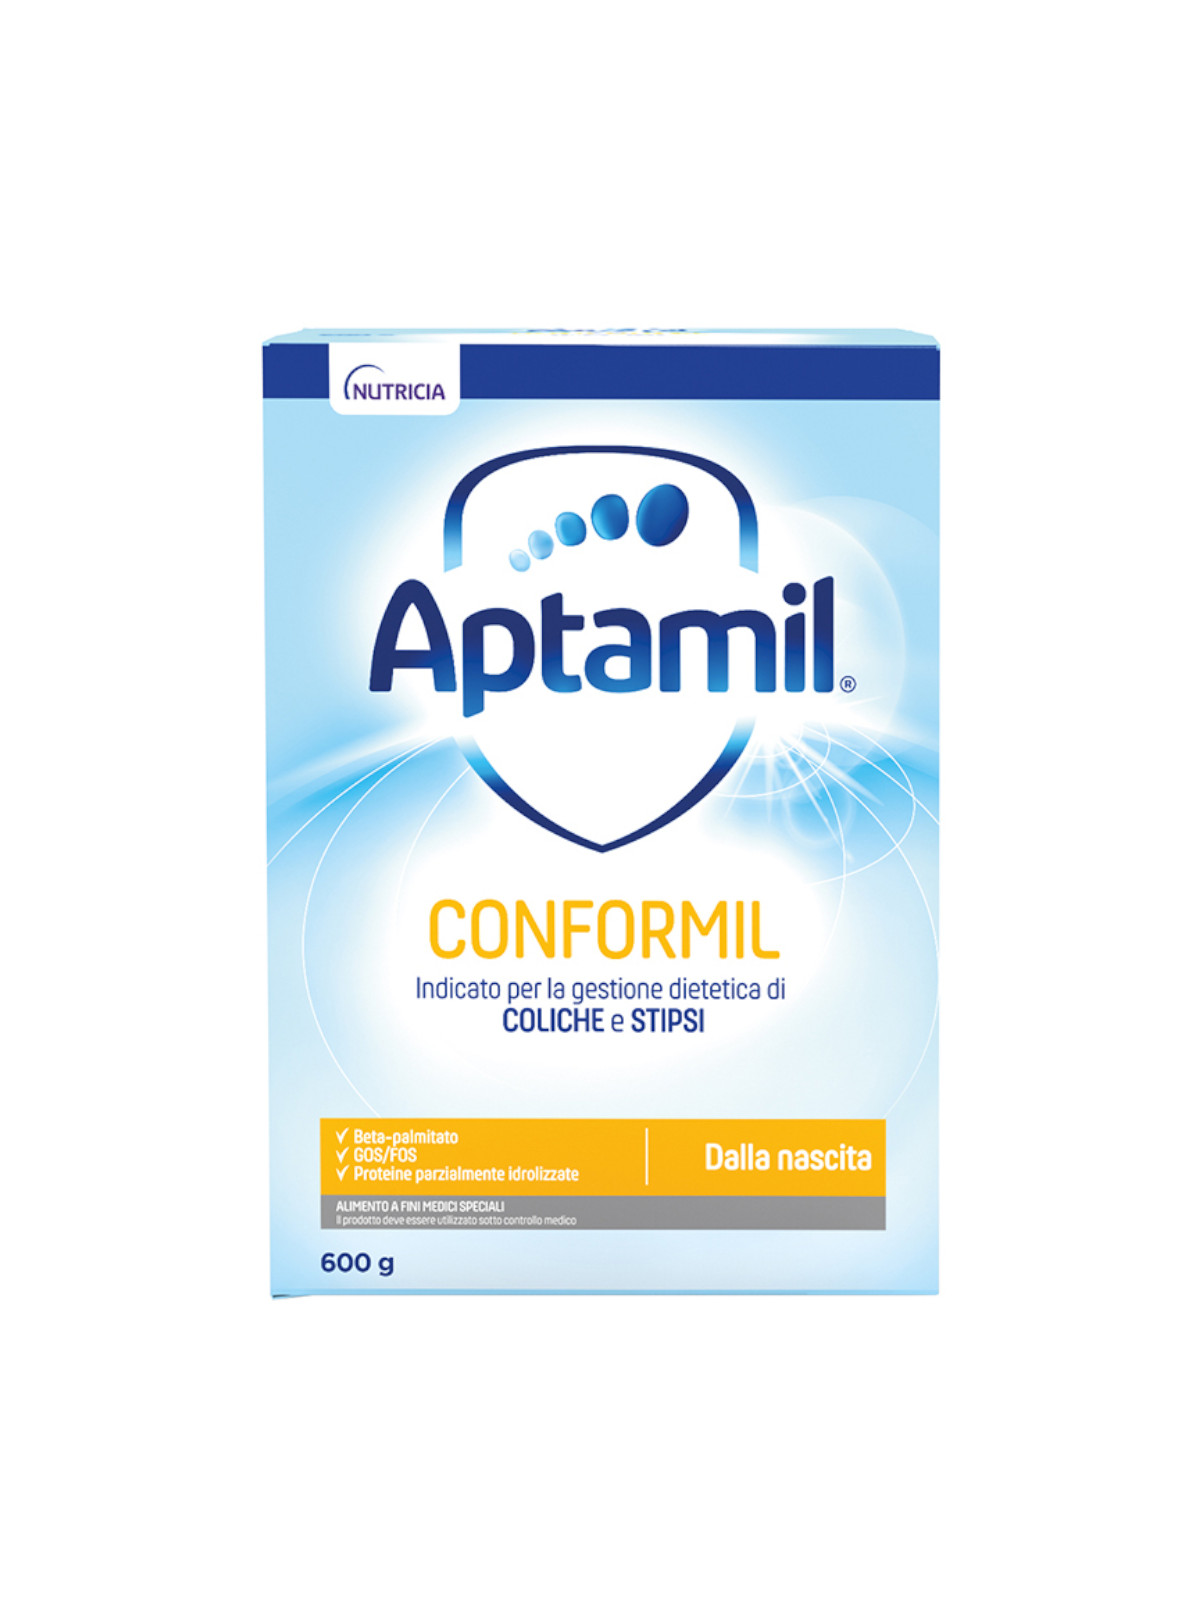 Aptamil nutribiotik 3 - latte di crescita in polvere per bambini dal 12°  mese compiuto - 830g - Bimbostore